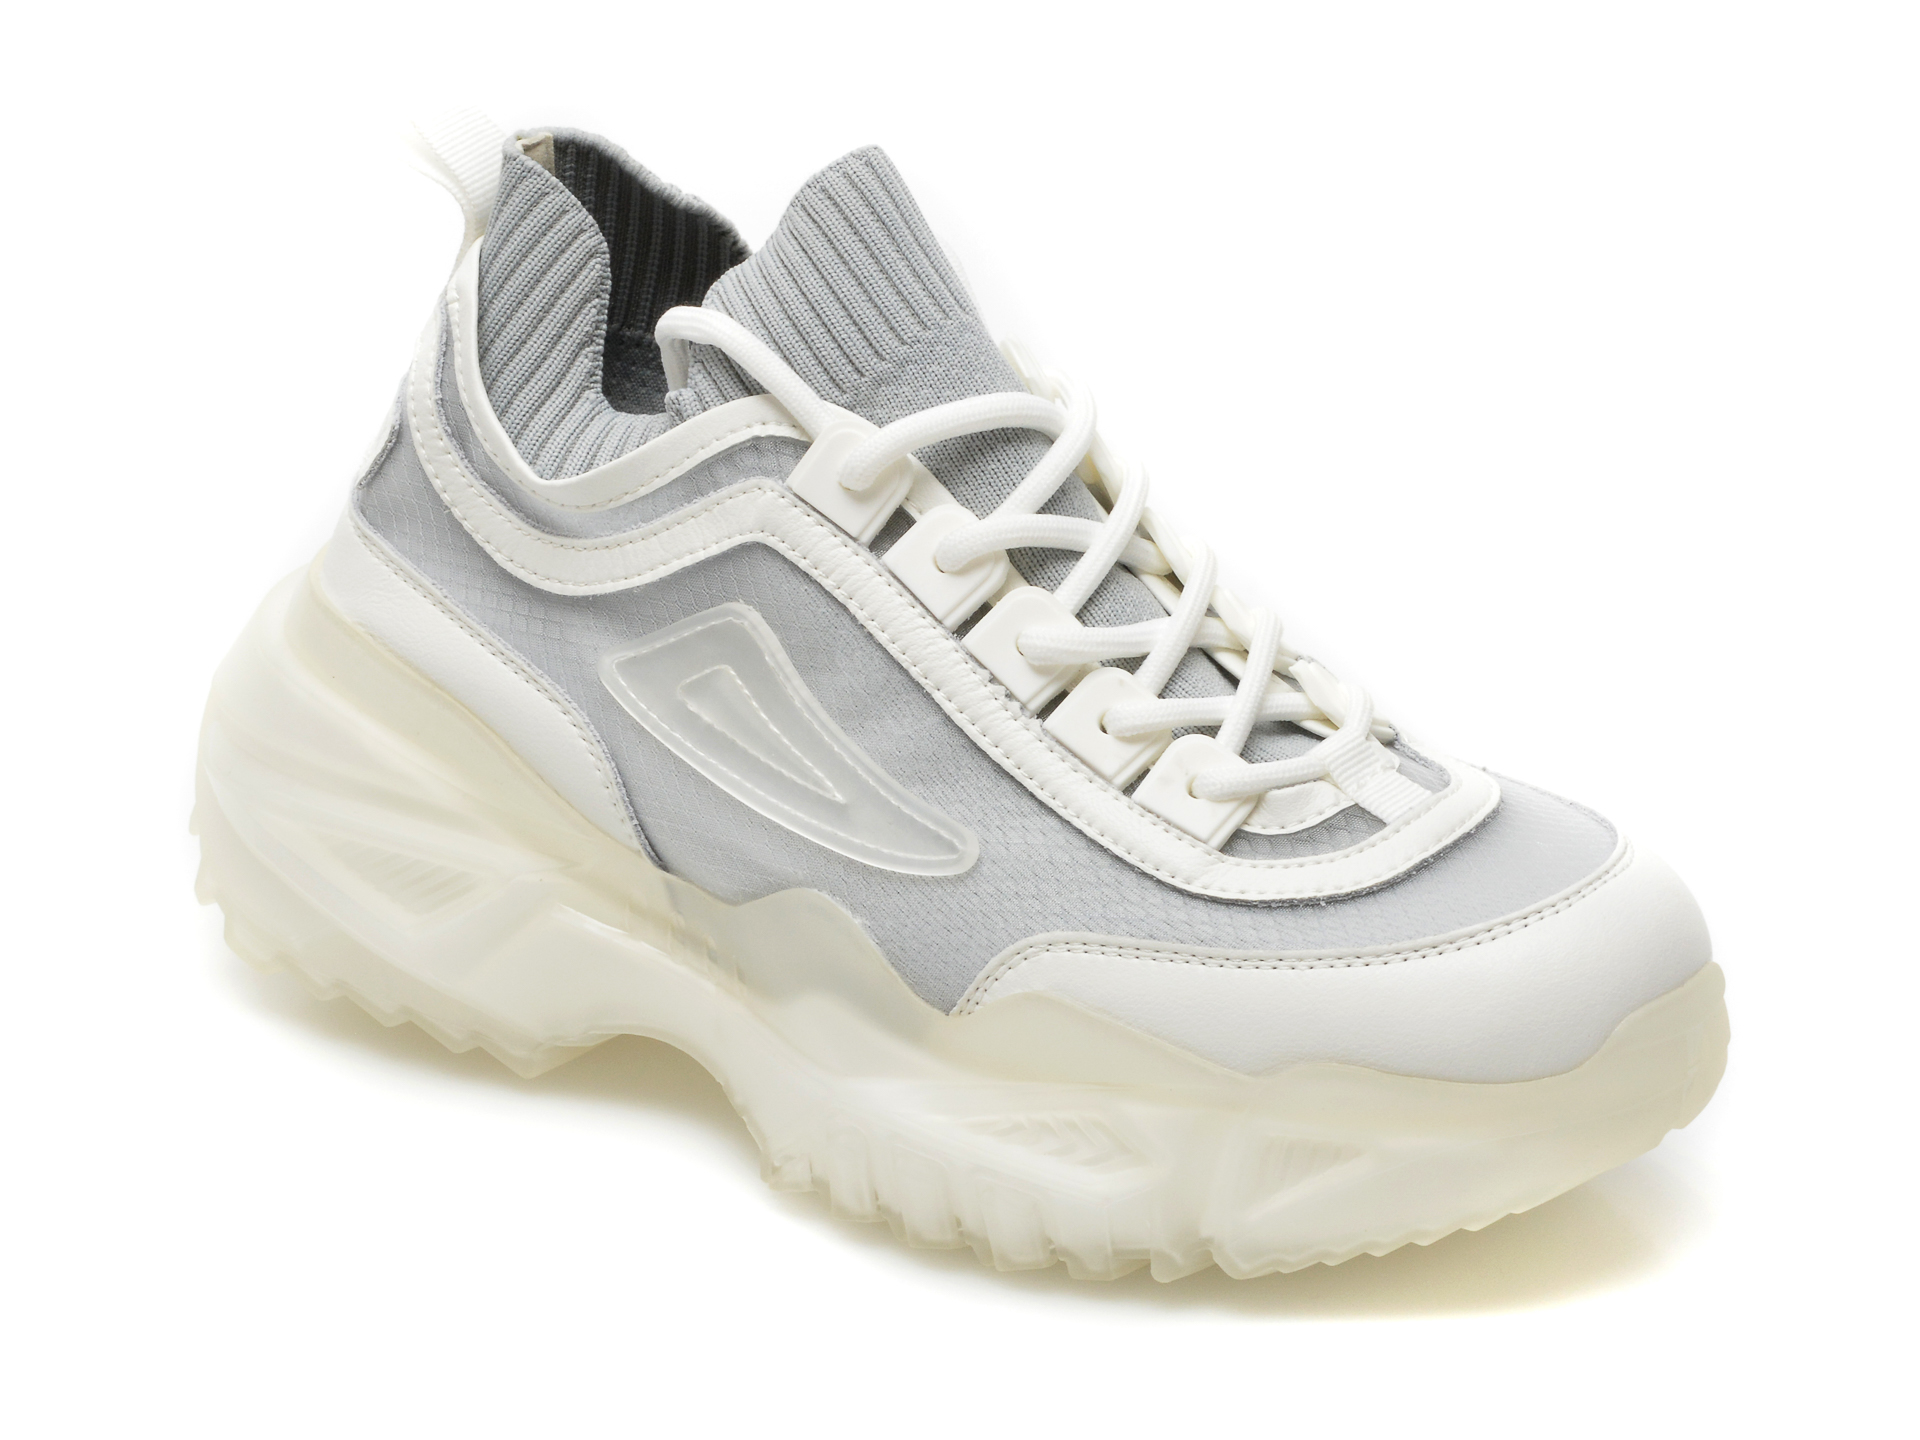 Pantofi sport GRYXX gri, K525, din material textil si piele ecologica Gryxx Gryxx